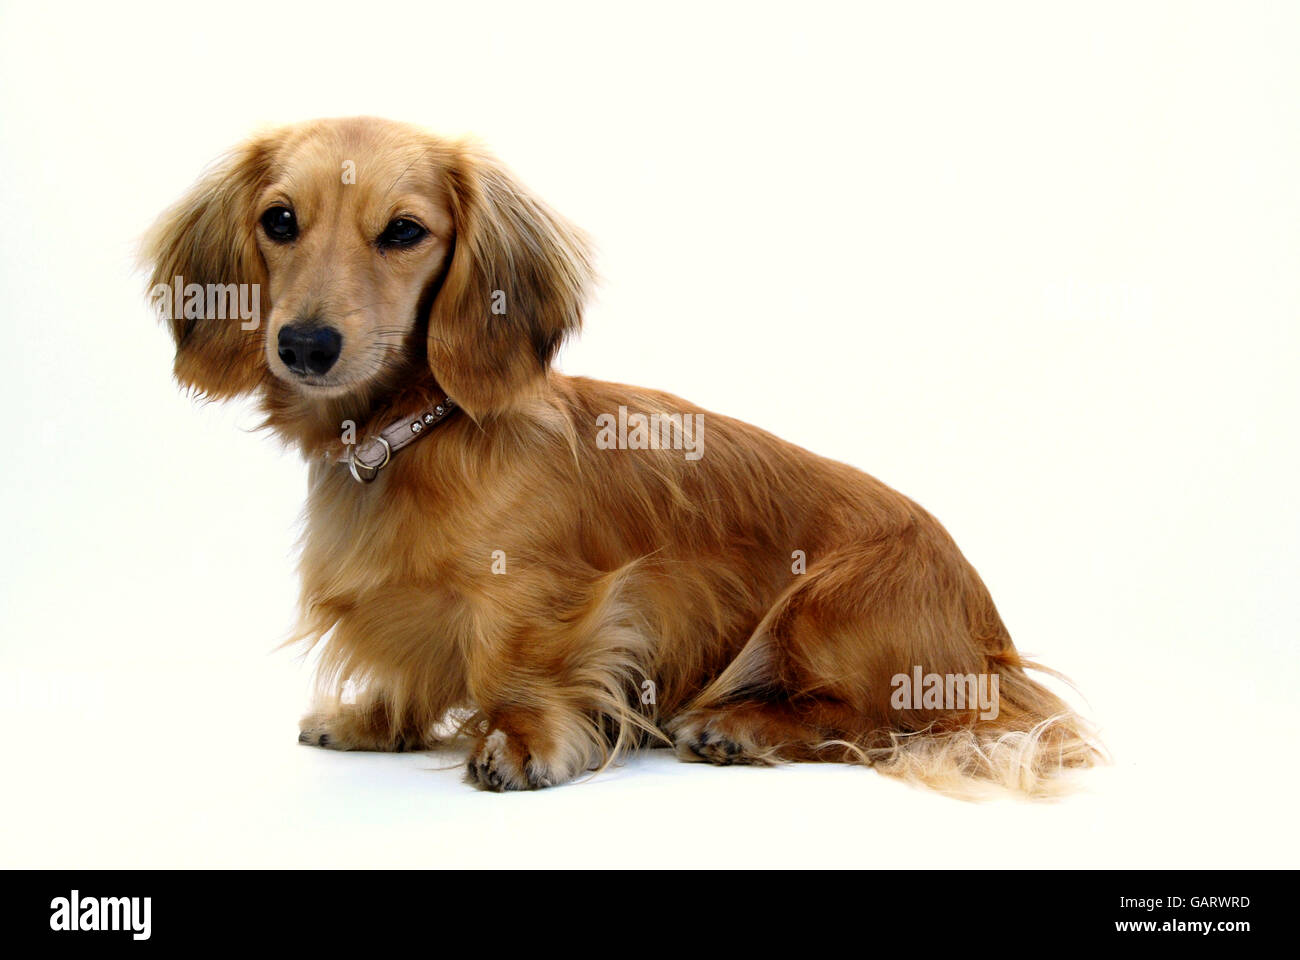 Dachshund Puppy dog. Stock Photo